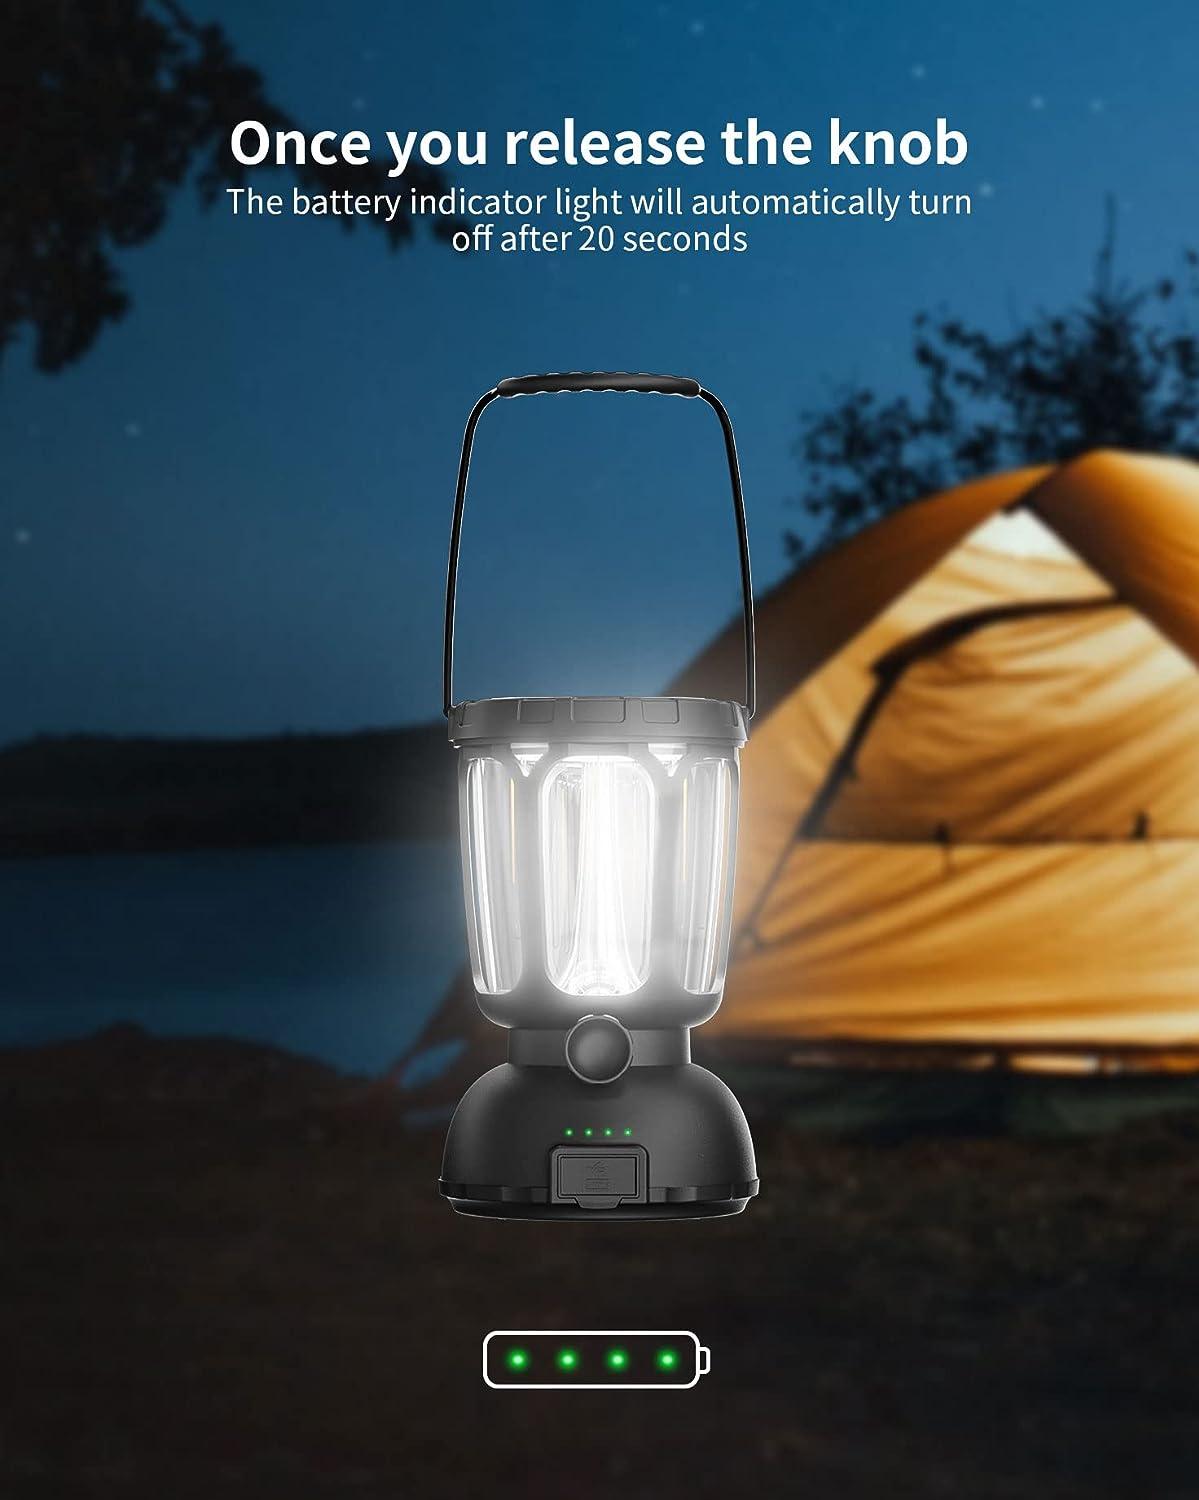 Mesqool Lanterne Solaire de Camping à Manivelle - Lampe de poche LED